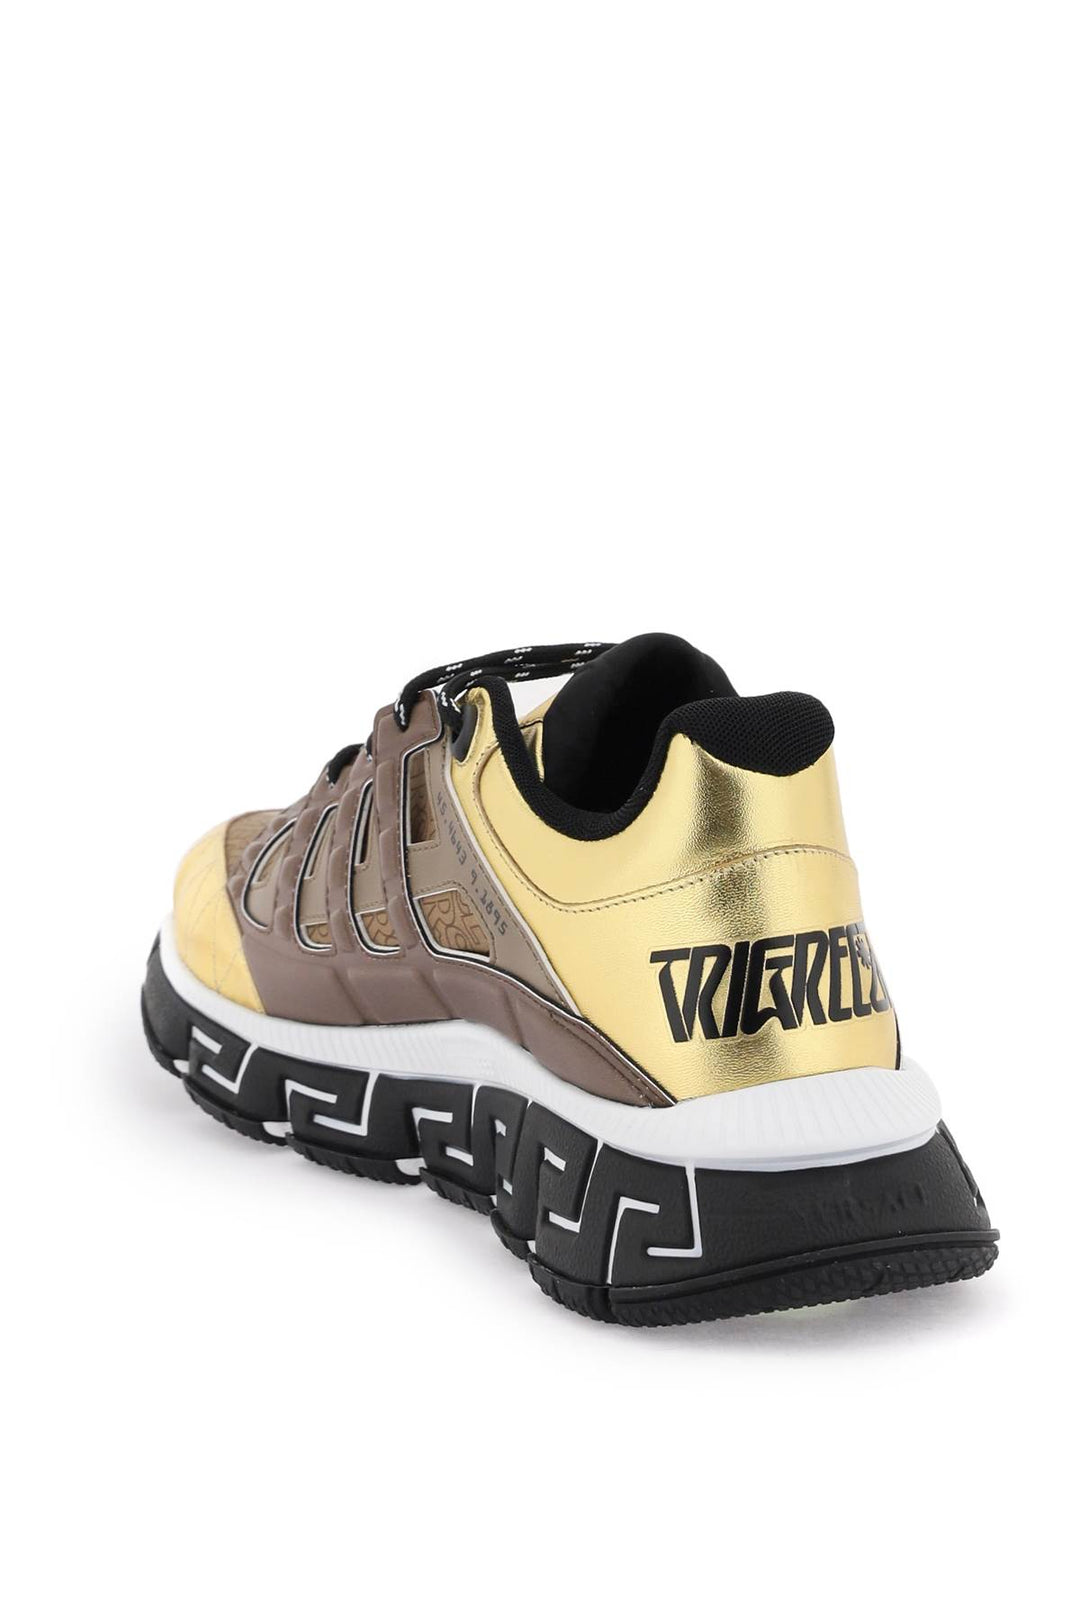 Versace 'Trigreca' Sneakers   Marrone